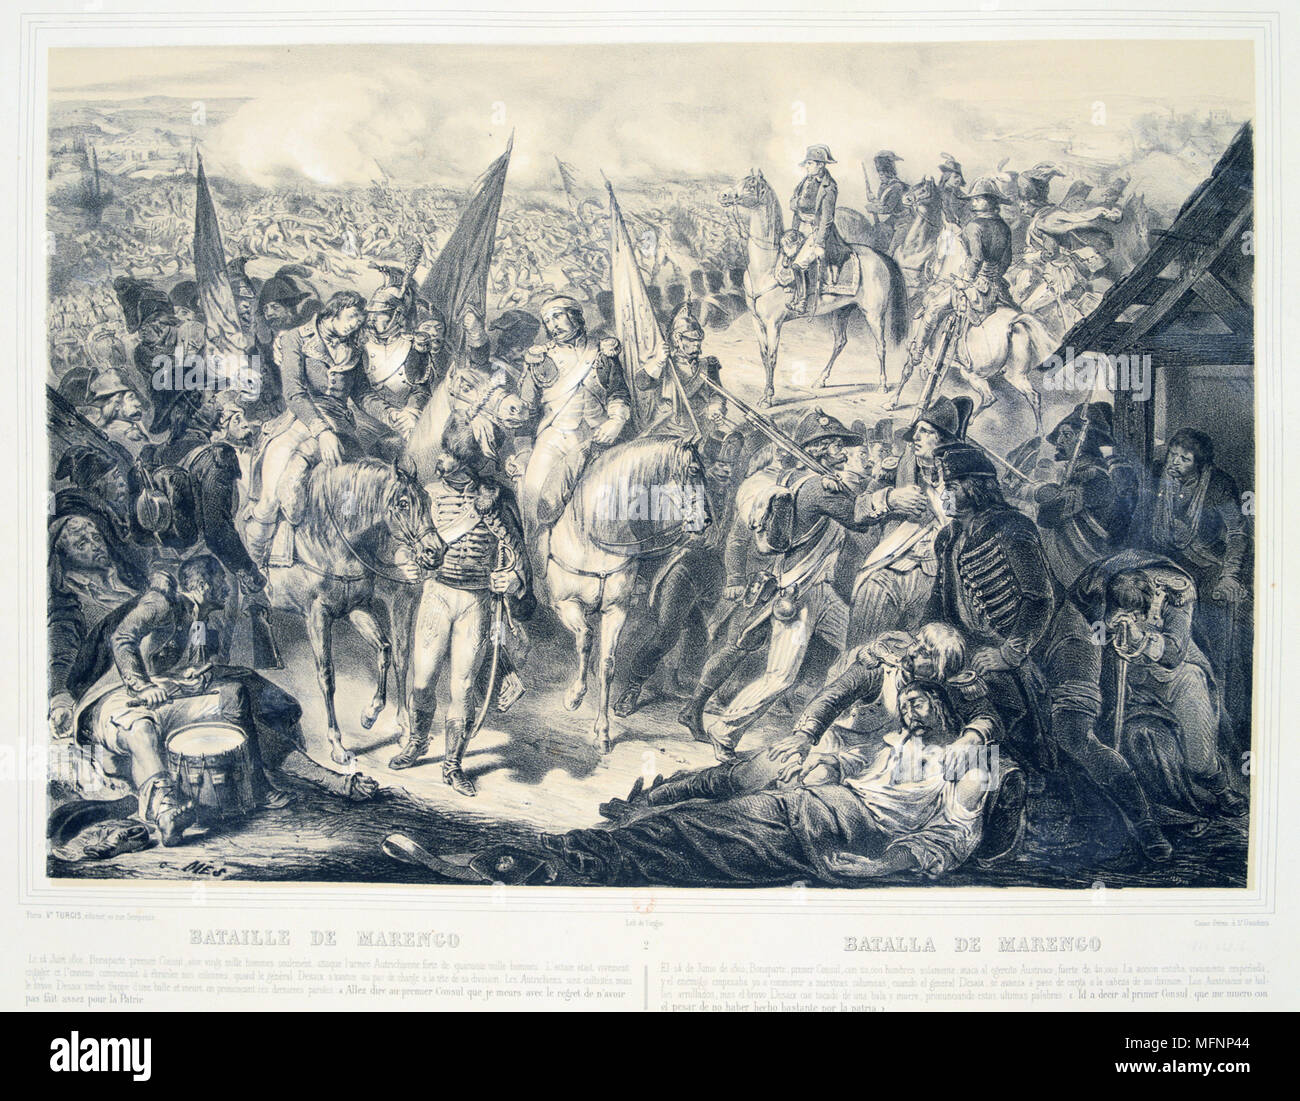 Bataille de Marengo, le 14 juin 1800. Les forces françaises sous Napoléon défait les autrichiens. Le général français Louis Desaix mortellement blessé, pris à l'écart de la bataille. Il est décédé le 30 mai. LLithograph colorée à la main. Banque D'Images